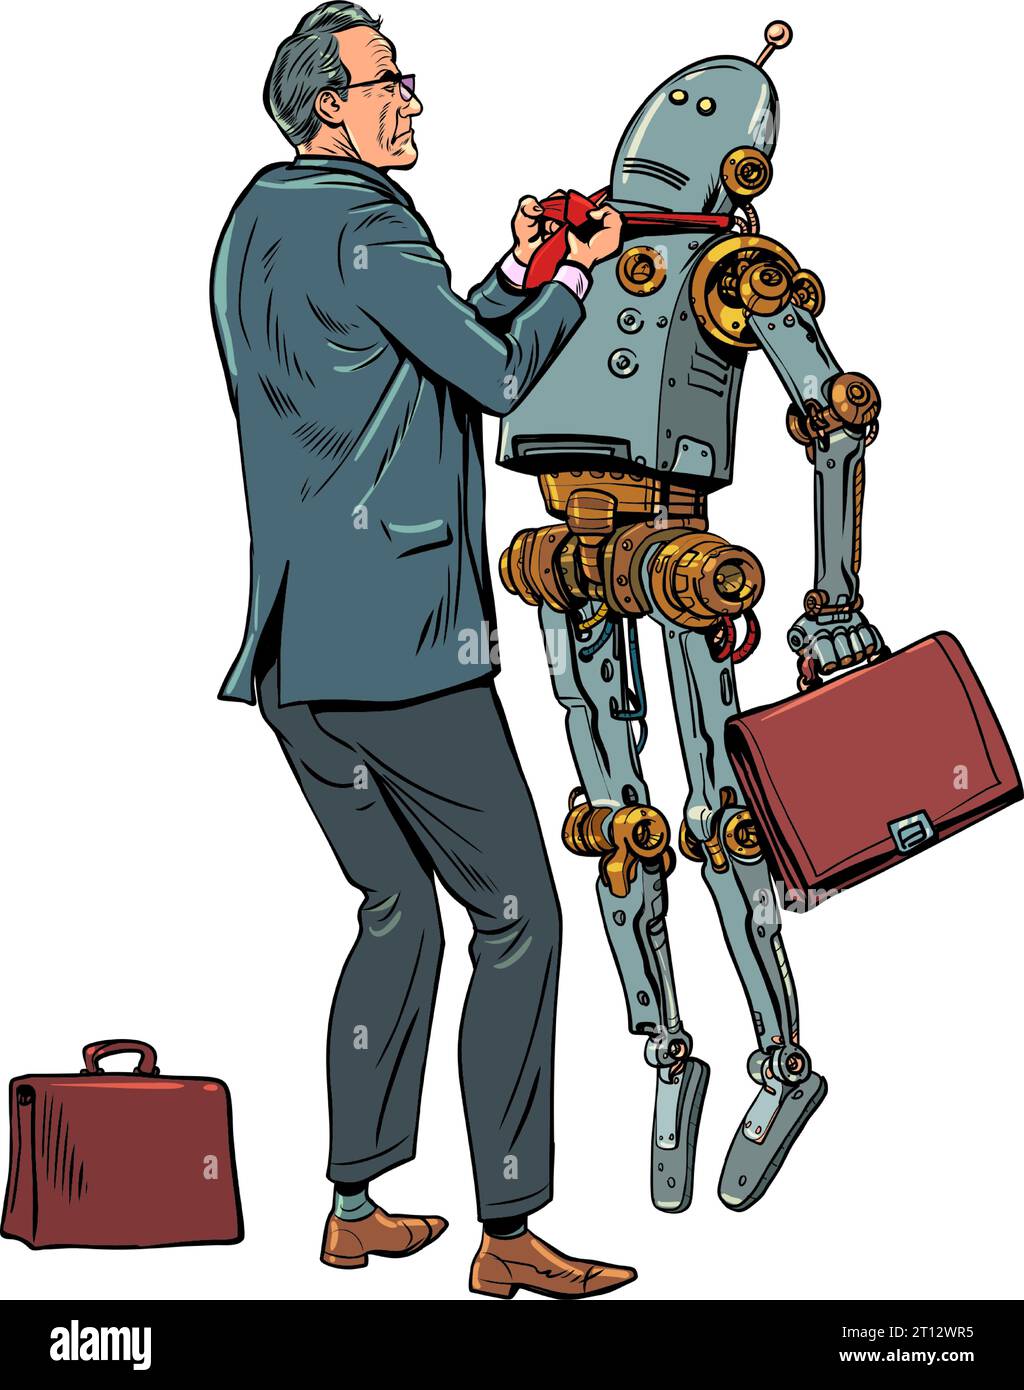 L'employé de bureau est insatisfait du travail du robot. Protester contre l'intelligence artificielle et la lutte contre elle. Le problème avec Illustration de Vecteur